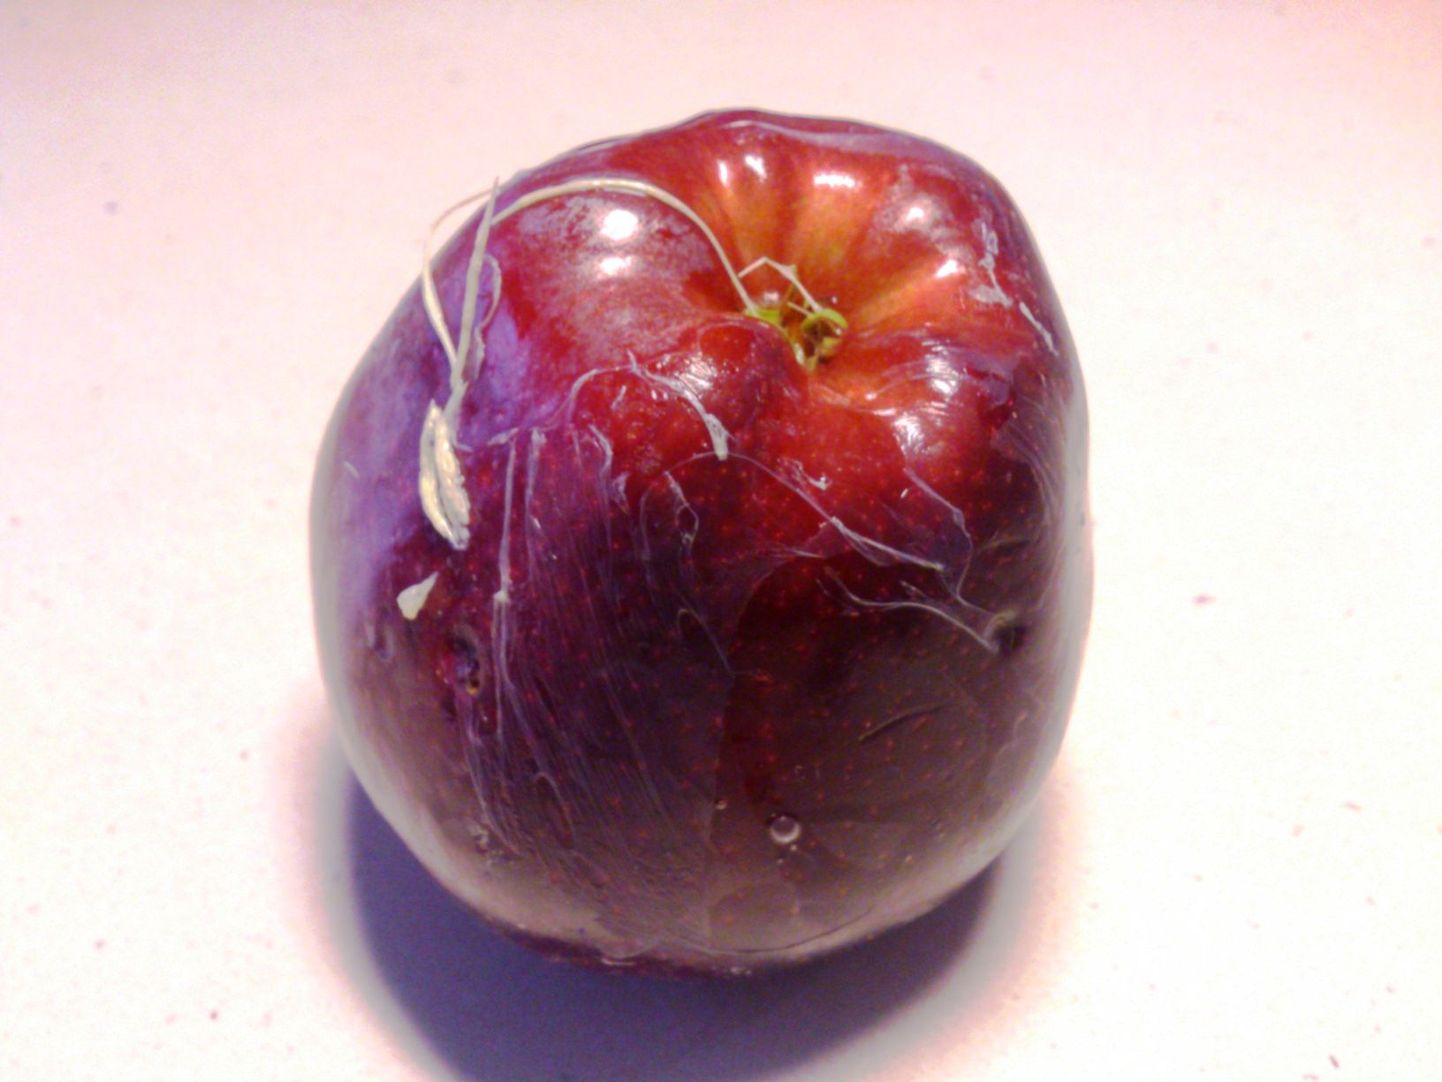 Stockmannist ostetud õunalt koorus pärast sooja vee all pesu valge kilejas moodustis.